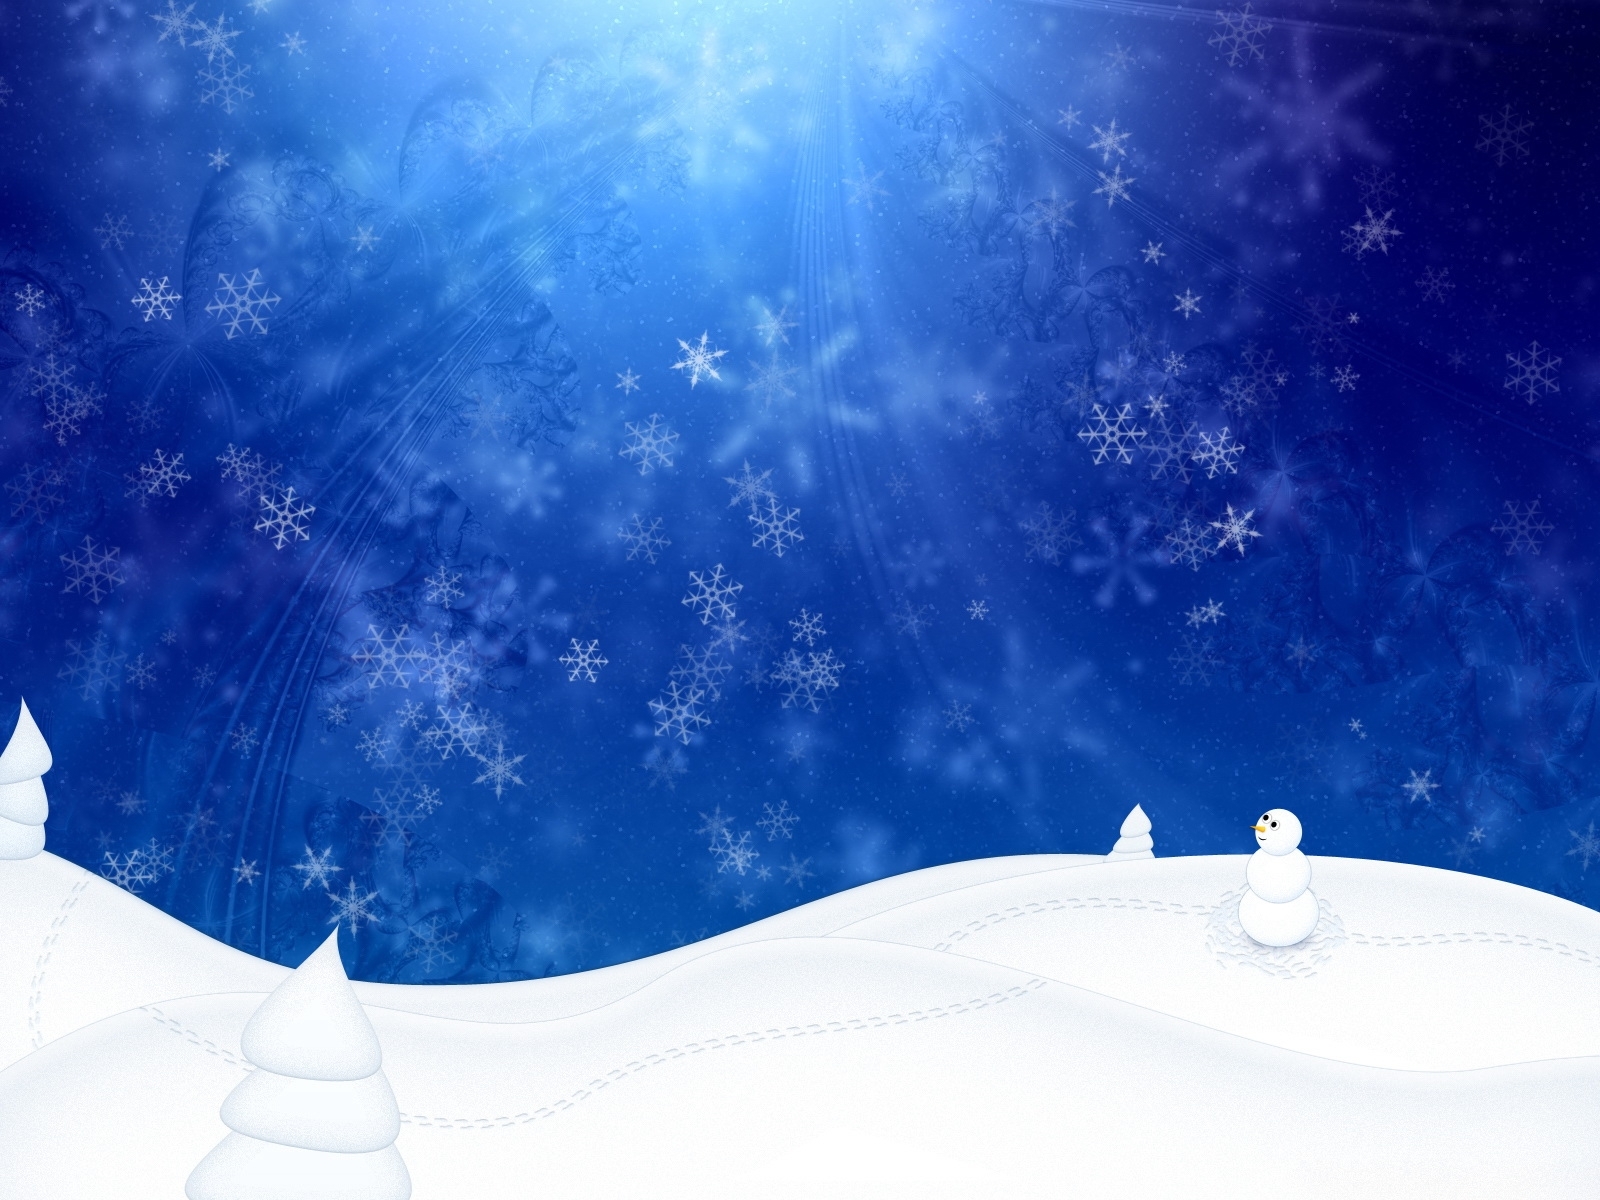 Descarga gratuita de fondo de pantalla para móvil de Nieve, Invierno, Año Nuevo, Navidad, Fondo.